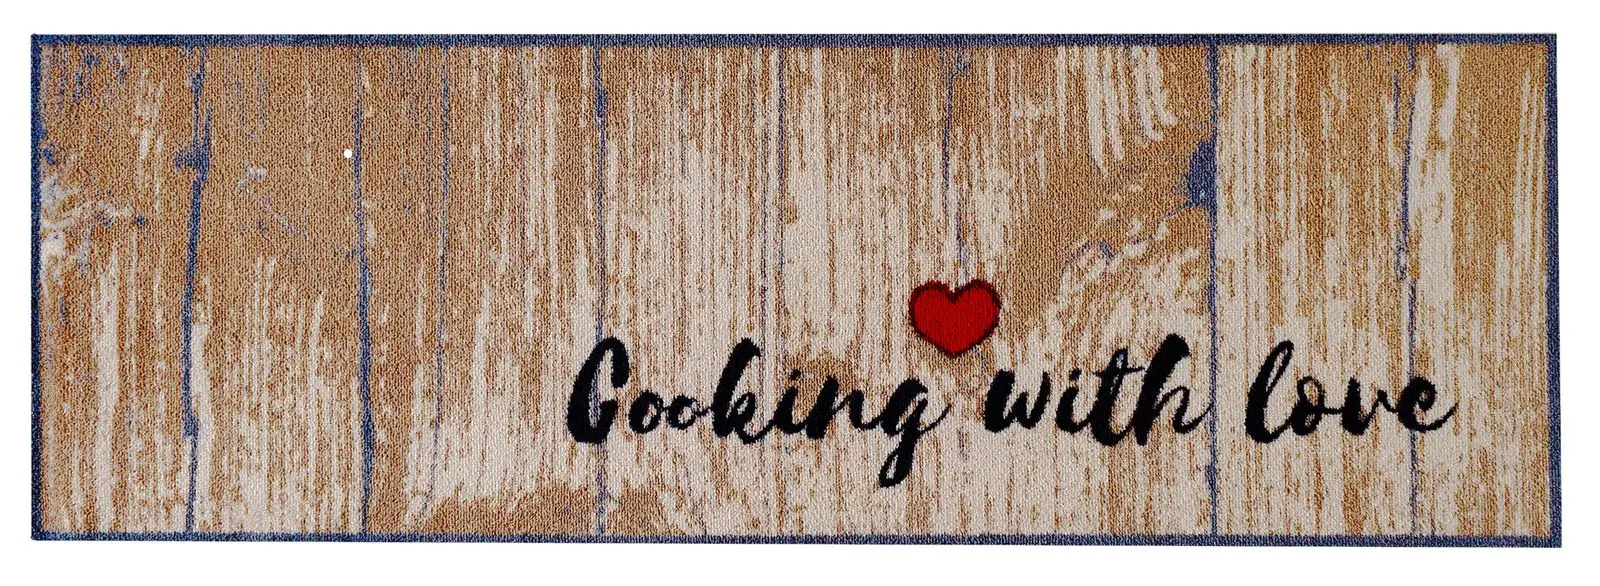 K眉chenteppich Cooking with love | Fußmatten